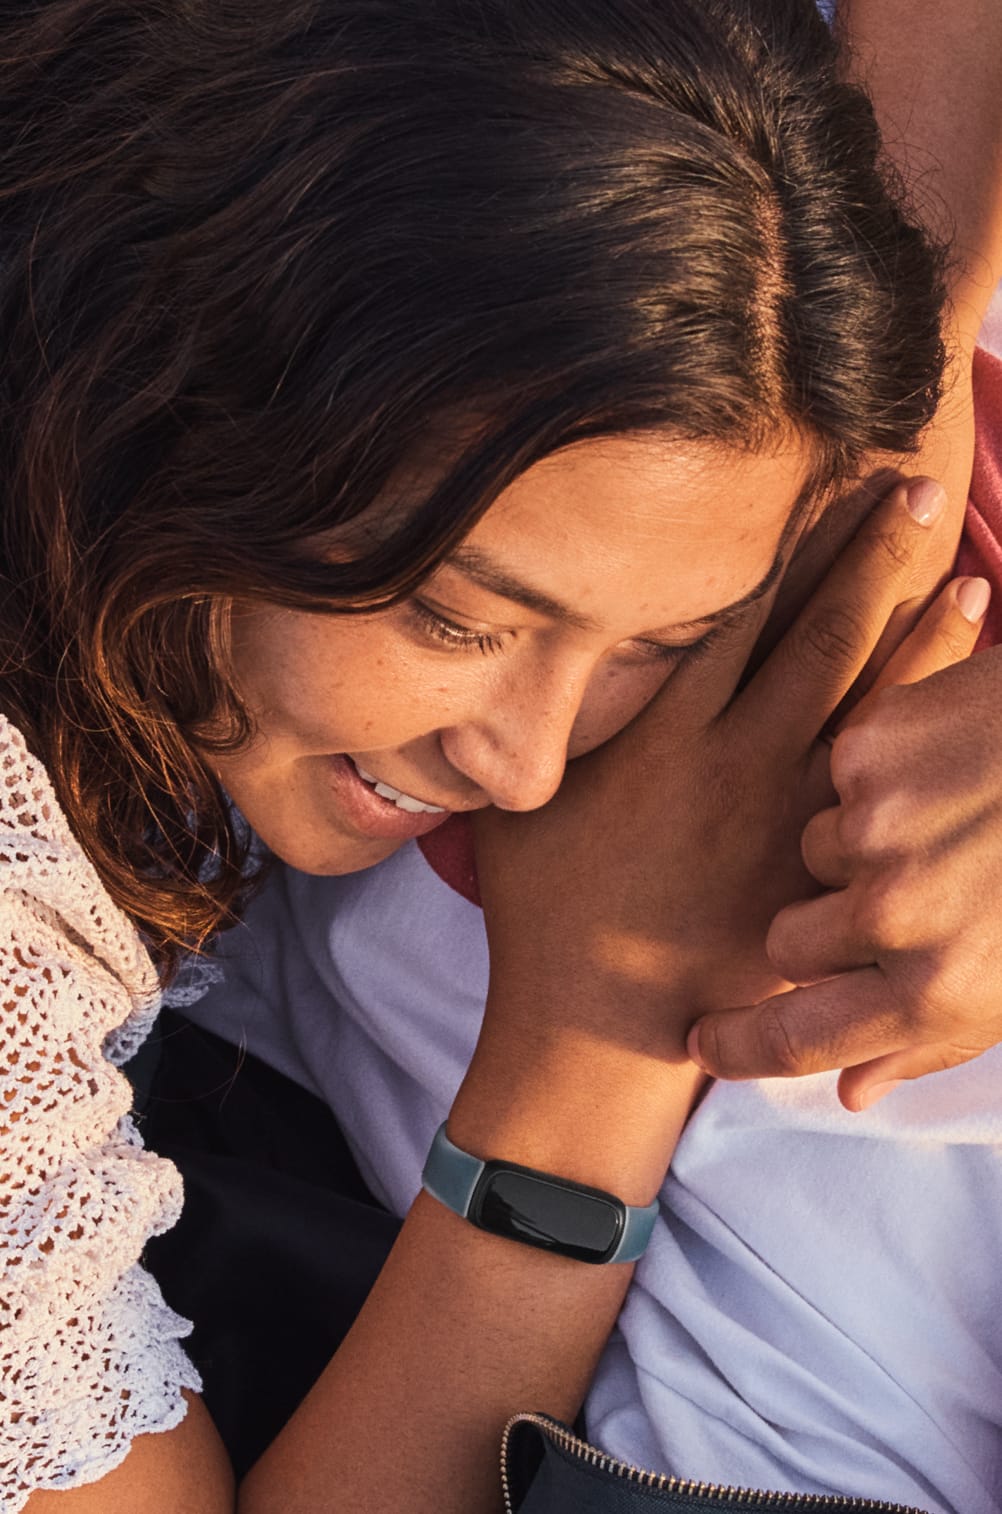 Fitbit Inspire 3 Parme/Noir - Bracelet connecté - Garantie 3 ans